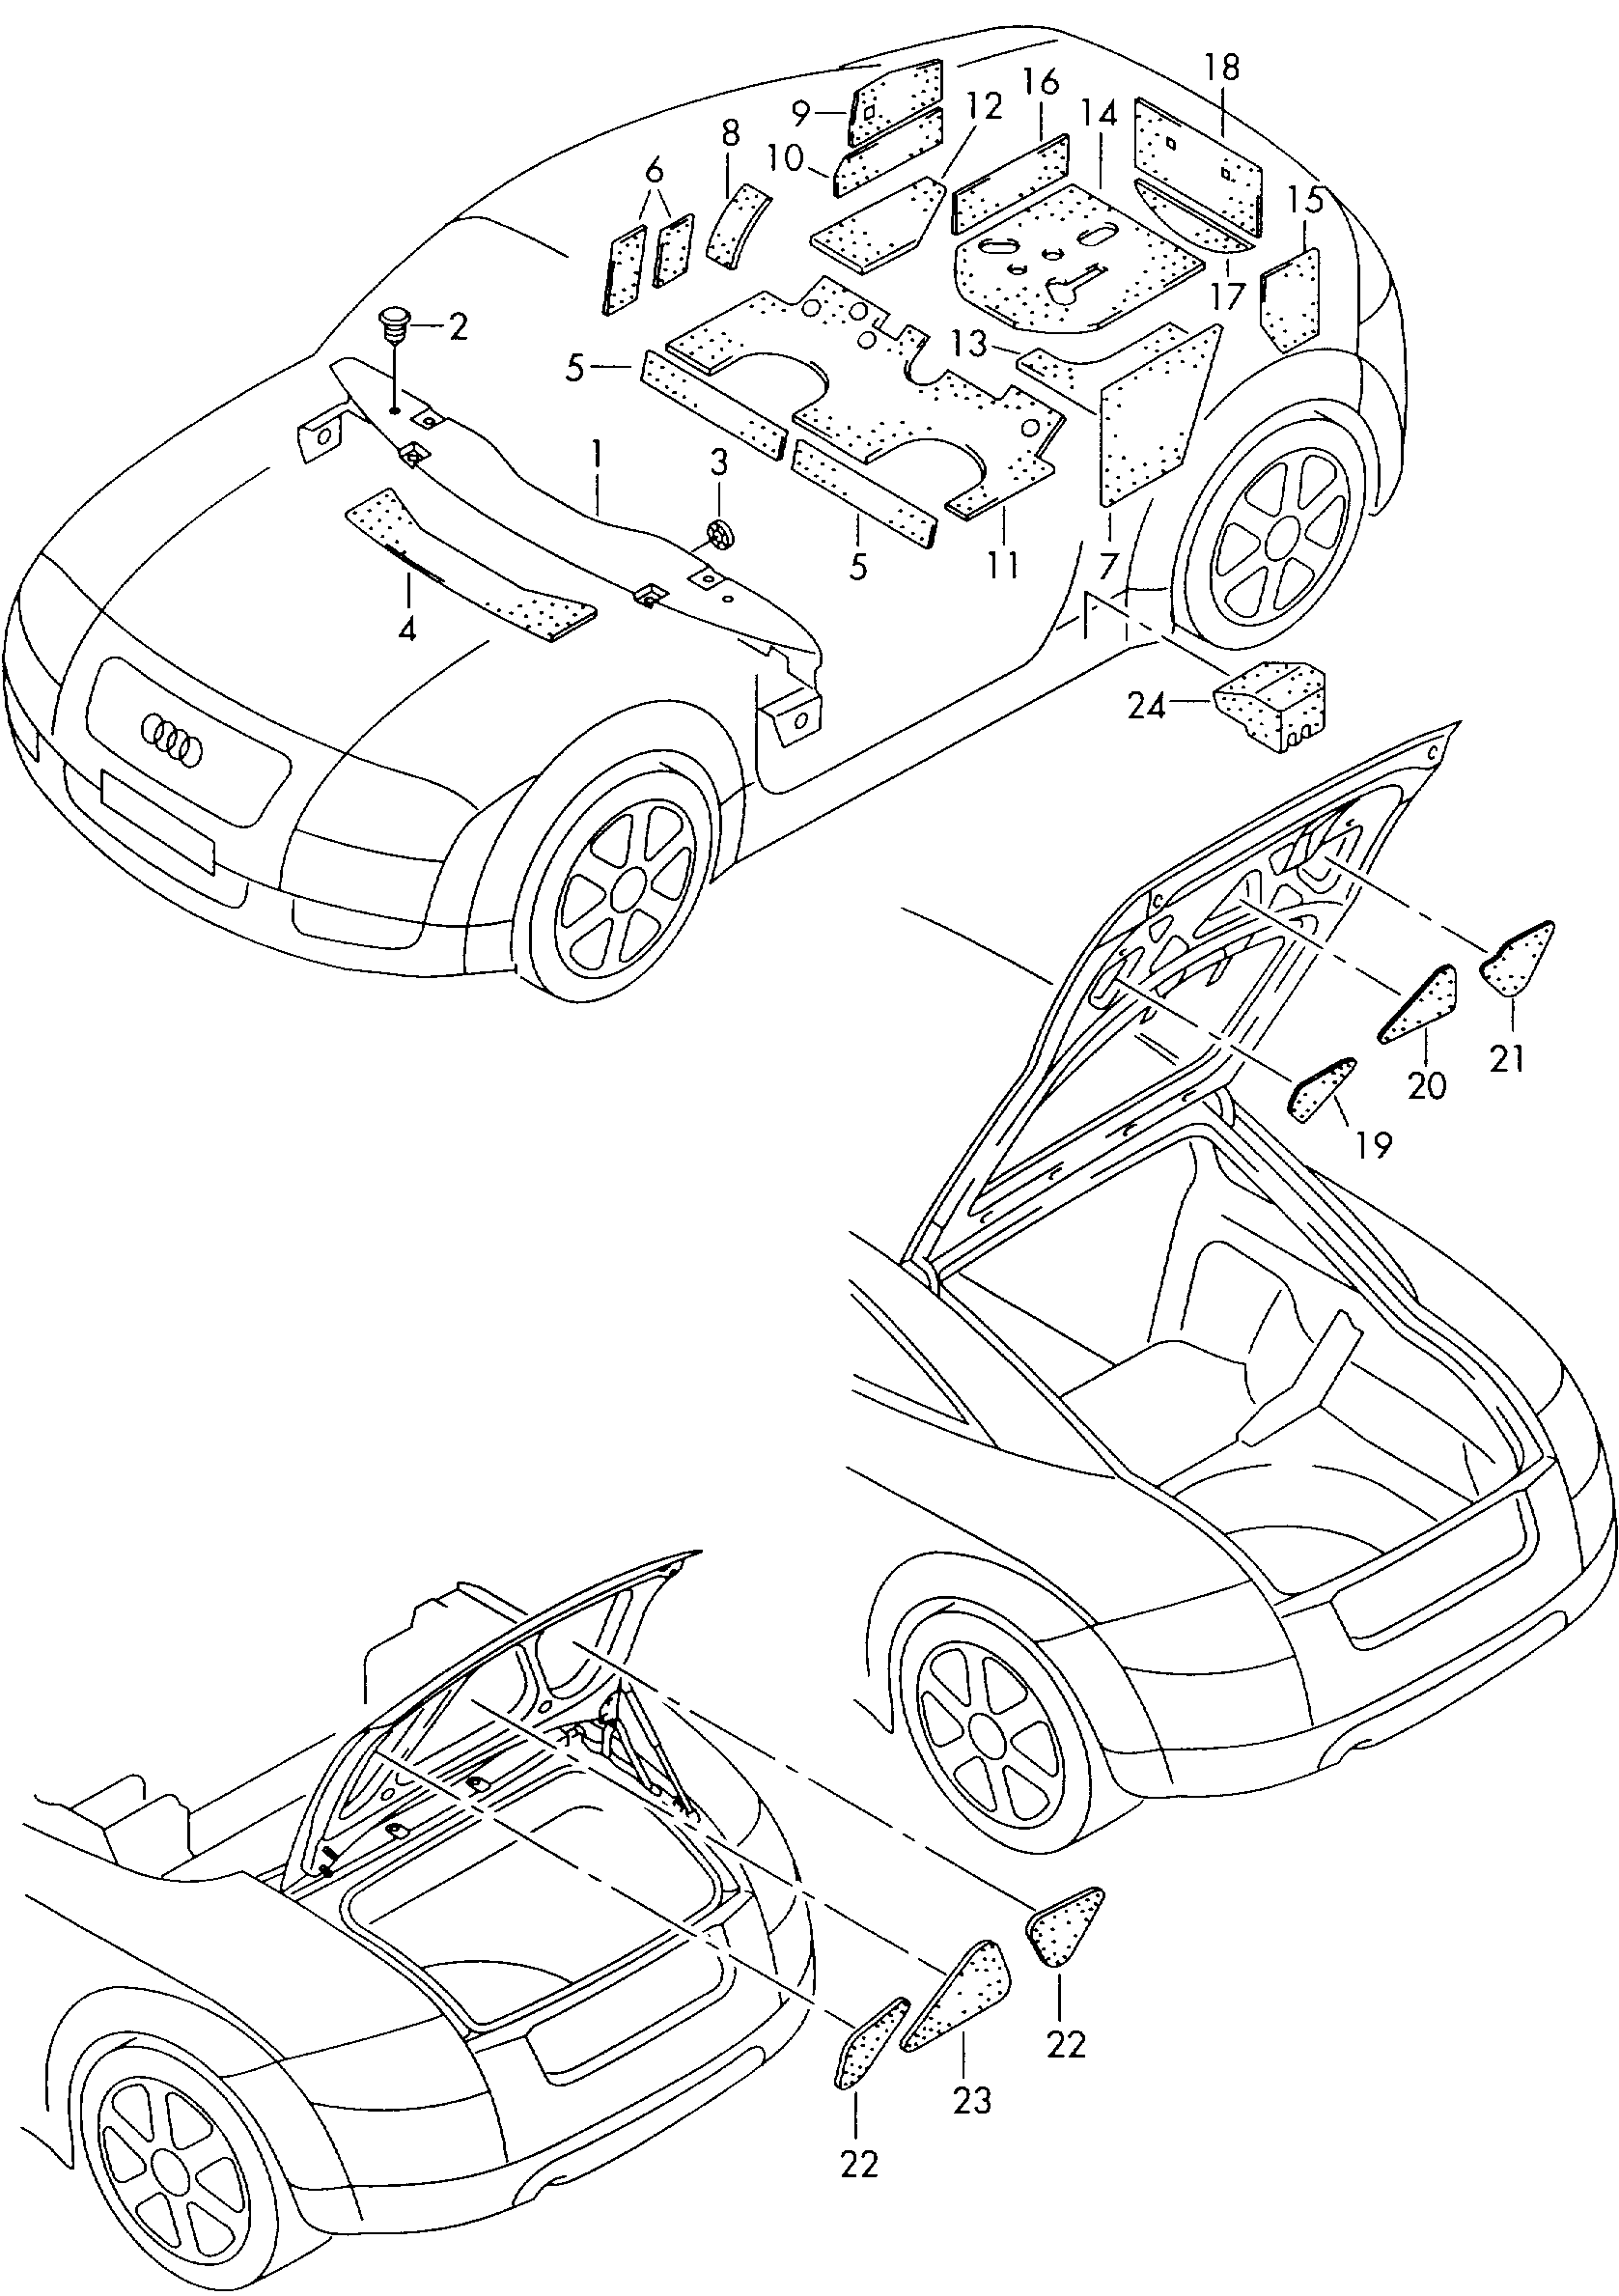 insulation for floor; sound absorber for side pane... - Audi TT/TTS Coupe/Roadster(ATT)  